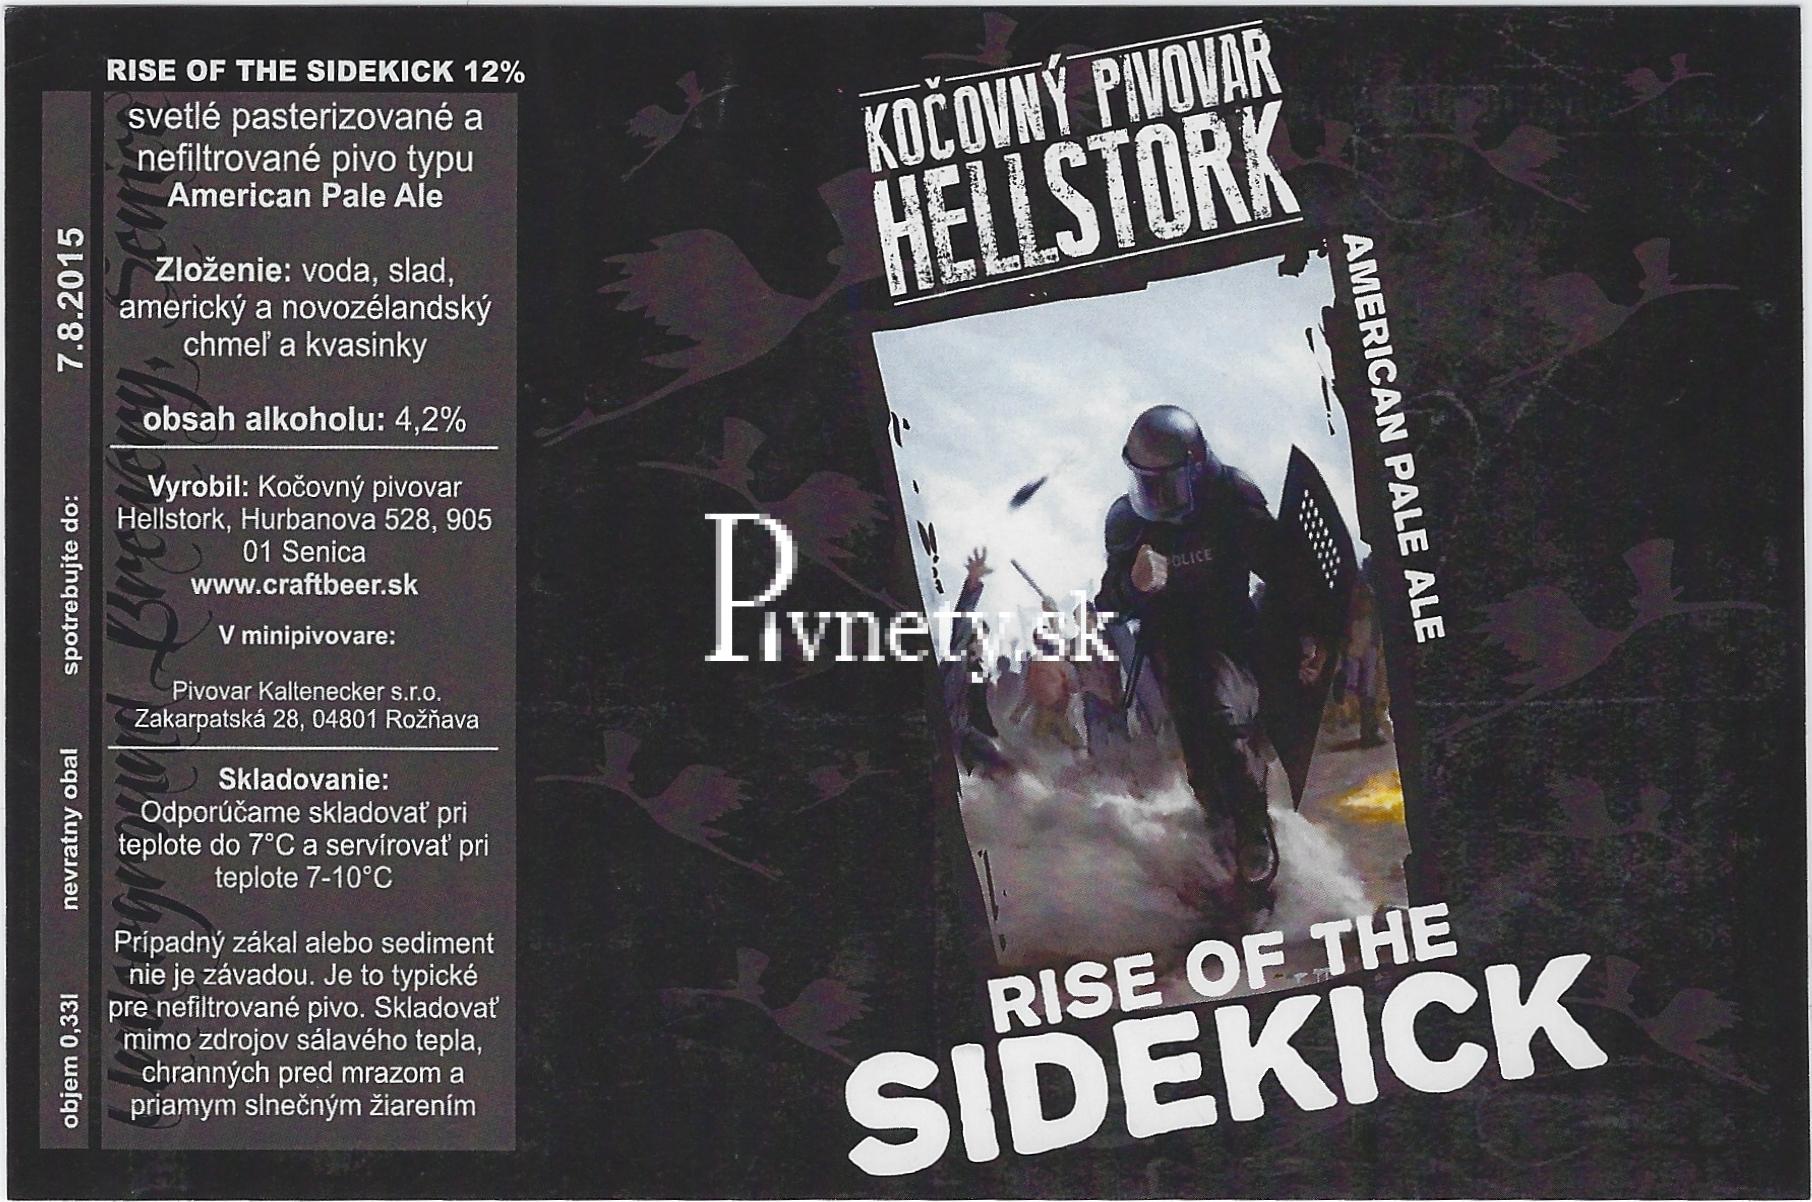 Kočovný pivovar Hellstork - Rise Of The Sidekick 12°